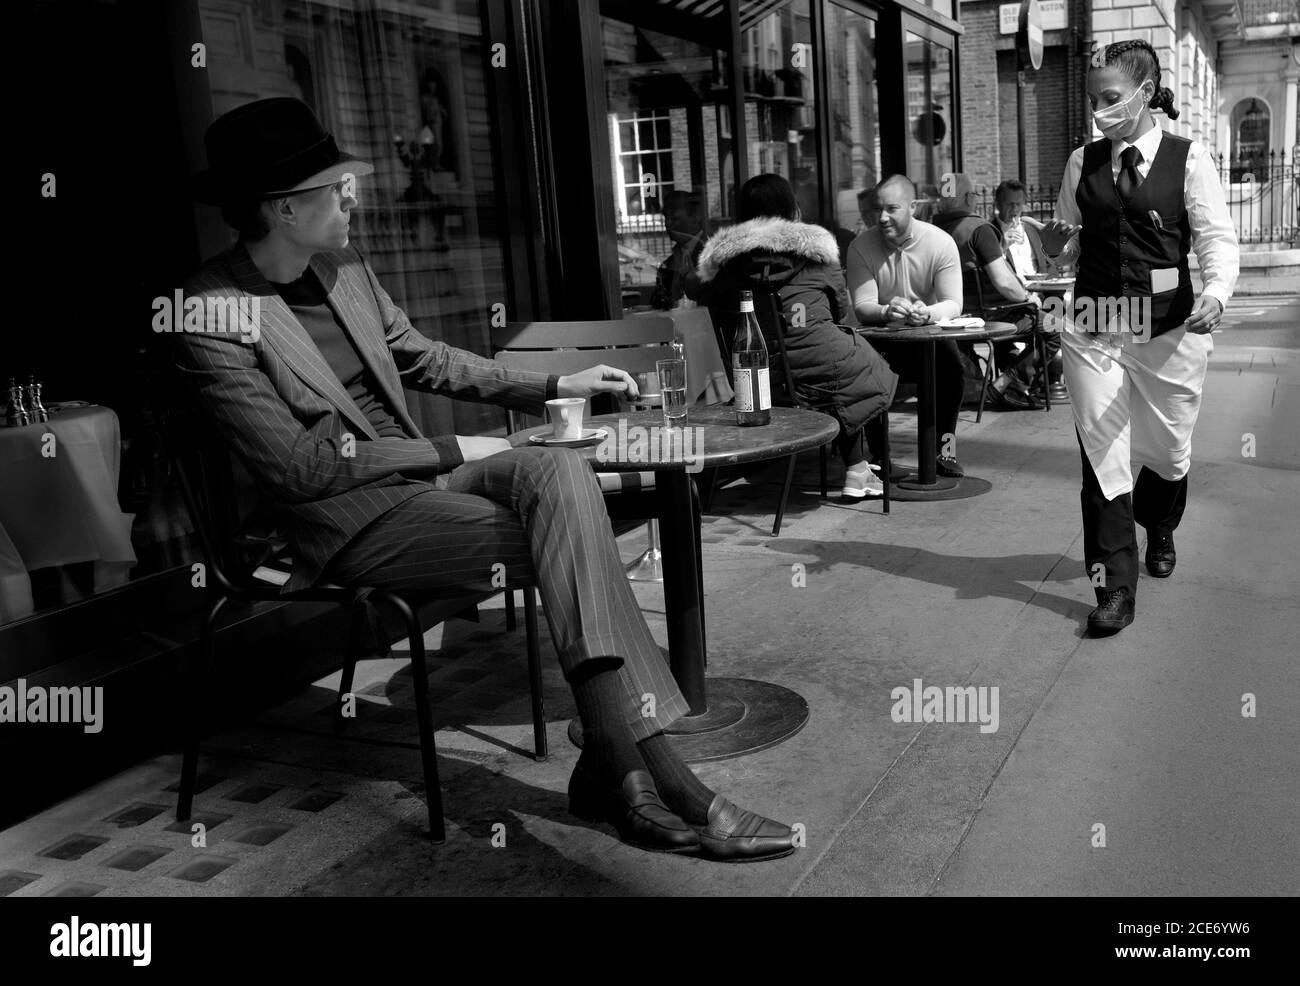 Londra, Inghilterra, Regno Unito. Uomo seduto fuori da un bar - cameriera con una maschera facciale, durante la pandemia COVID, il 2020 agosto durante la pandemia COVID, Augus Foto Stock